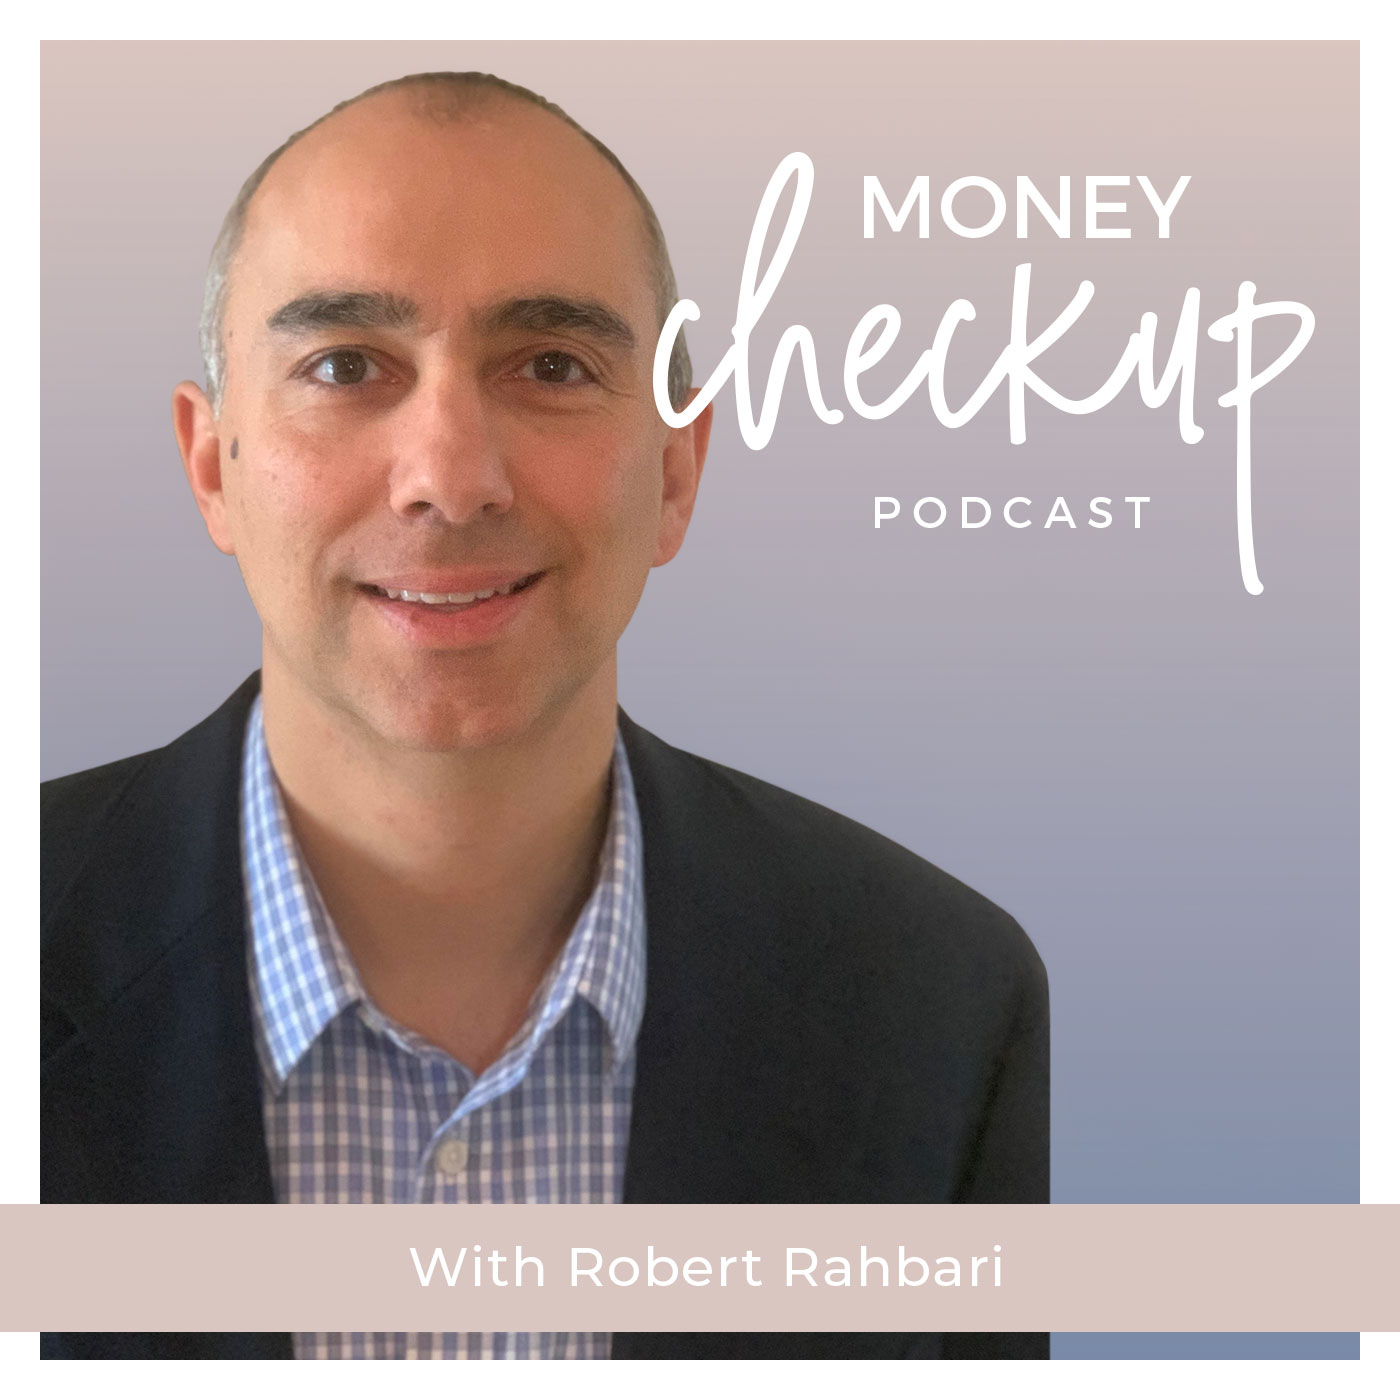 Money Checkup Podcast With Robert-Rahbari